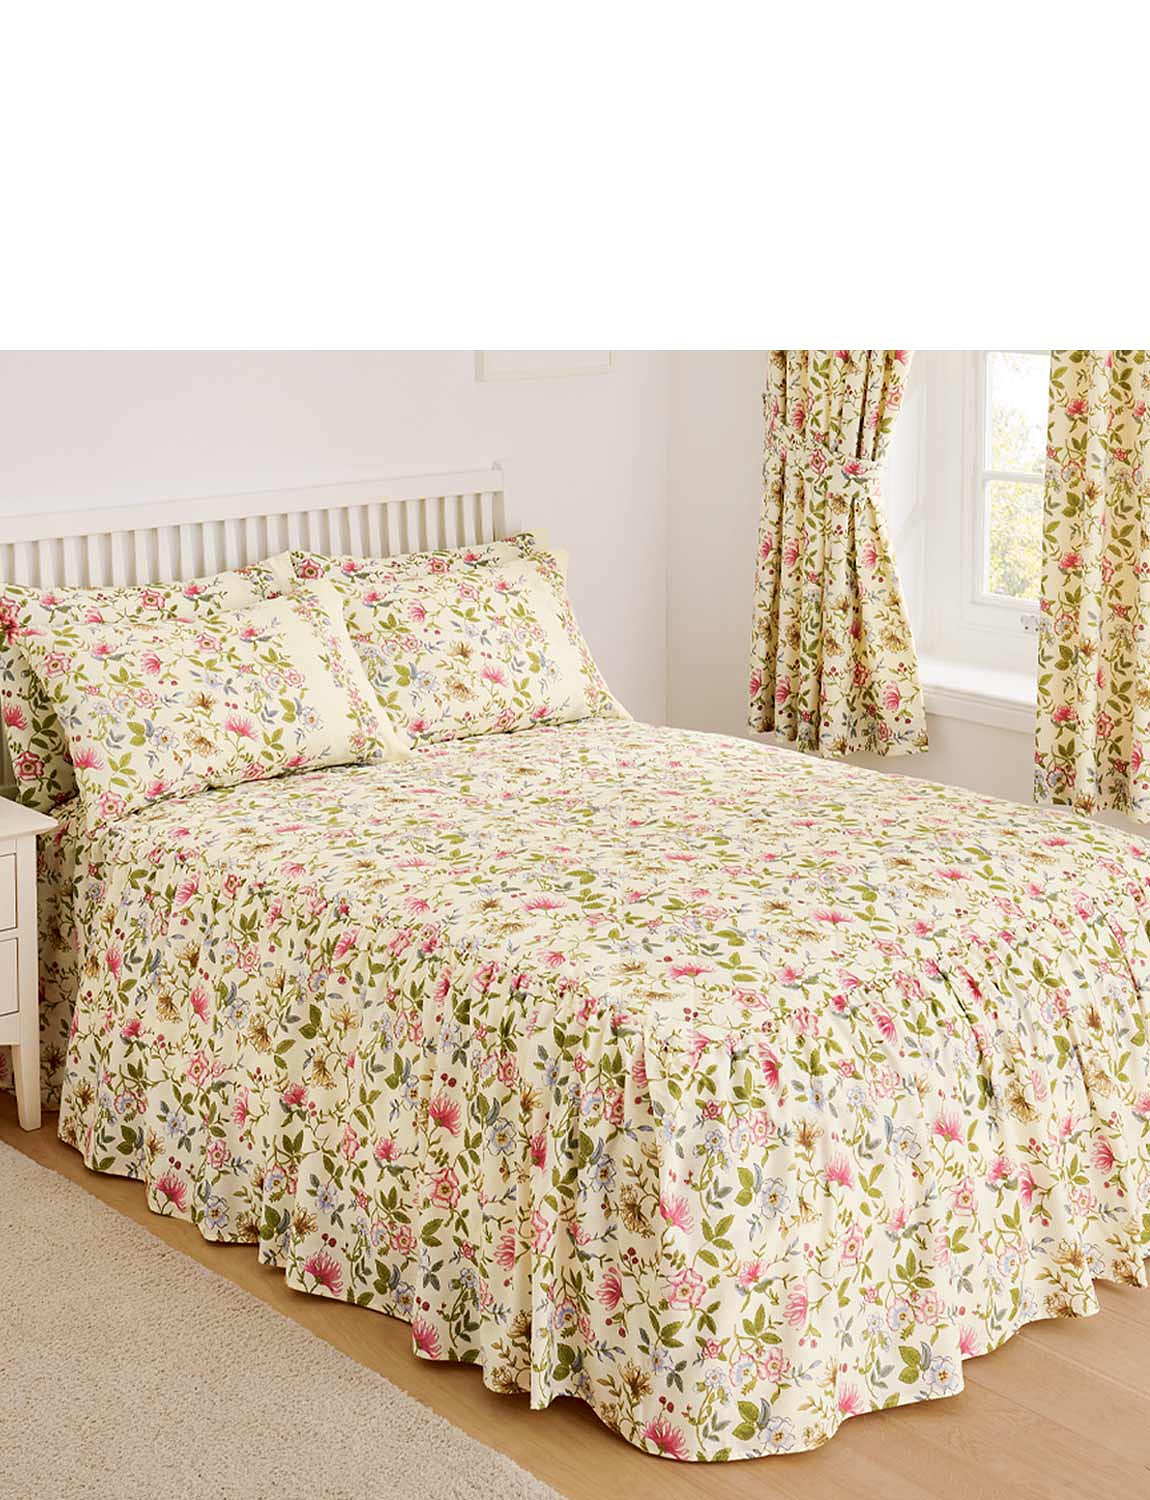 Chums Rose Garden Bedspread Multicolour Small Double 